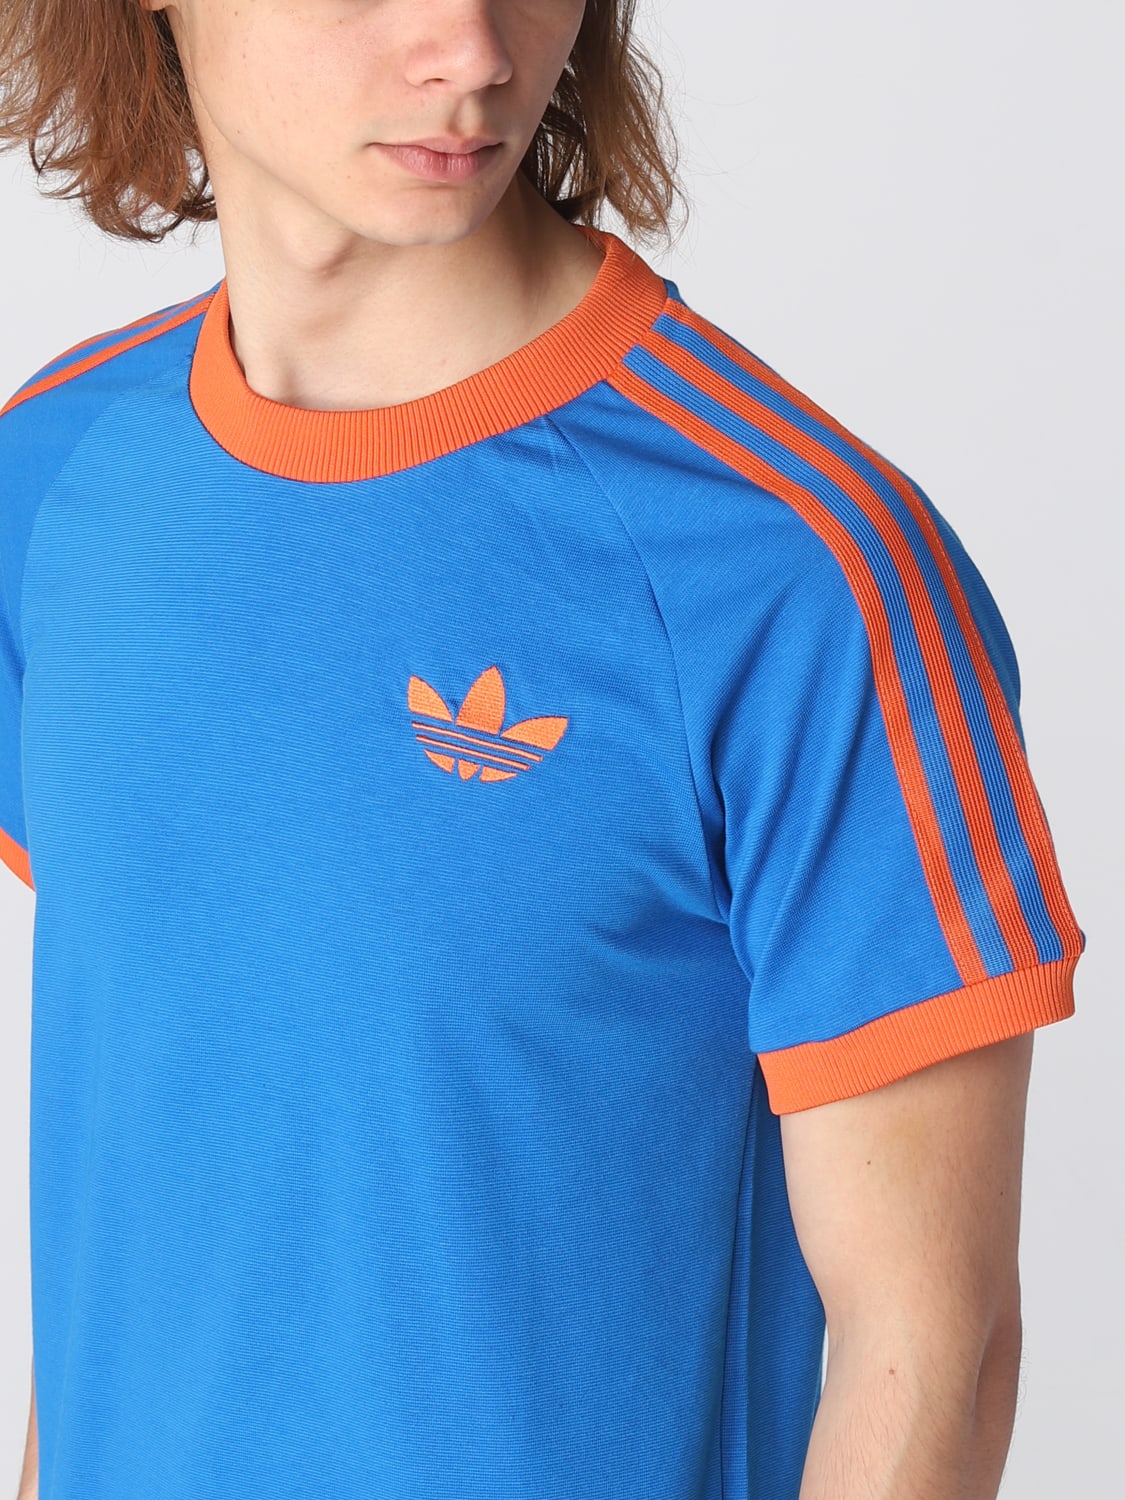 ADIDAS ORIGINALS: t-shirt for men - Blue | Adidas Originals t-shirt ...